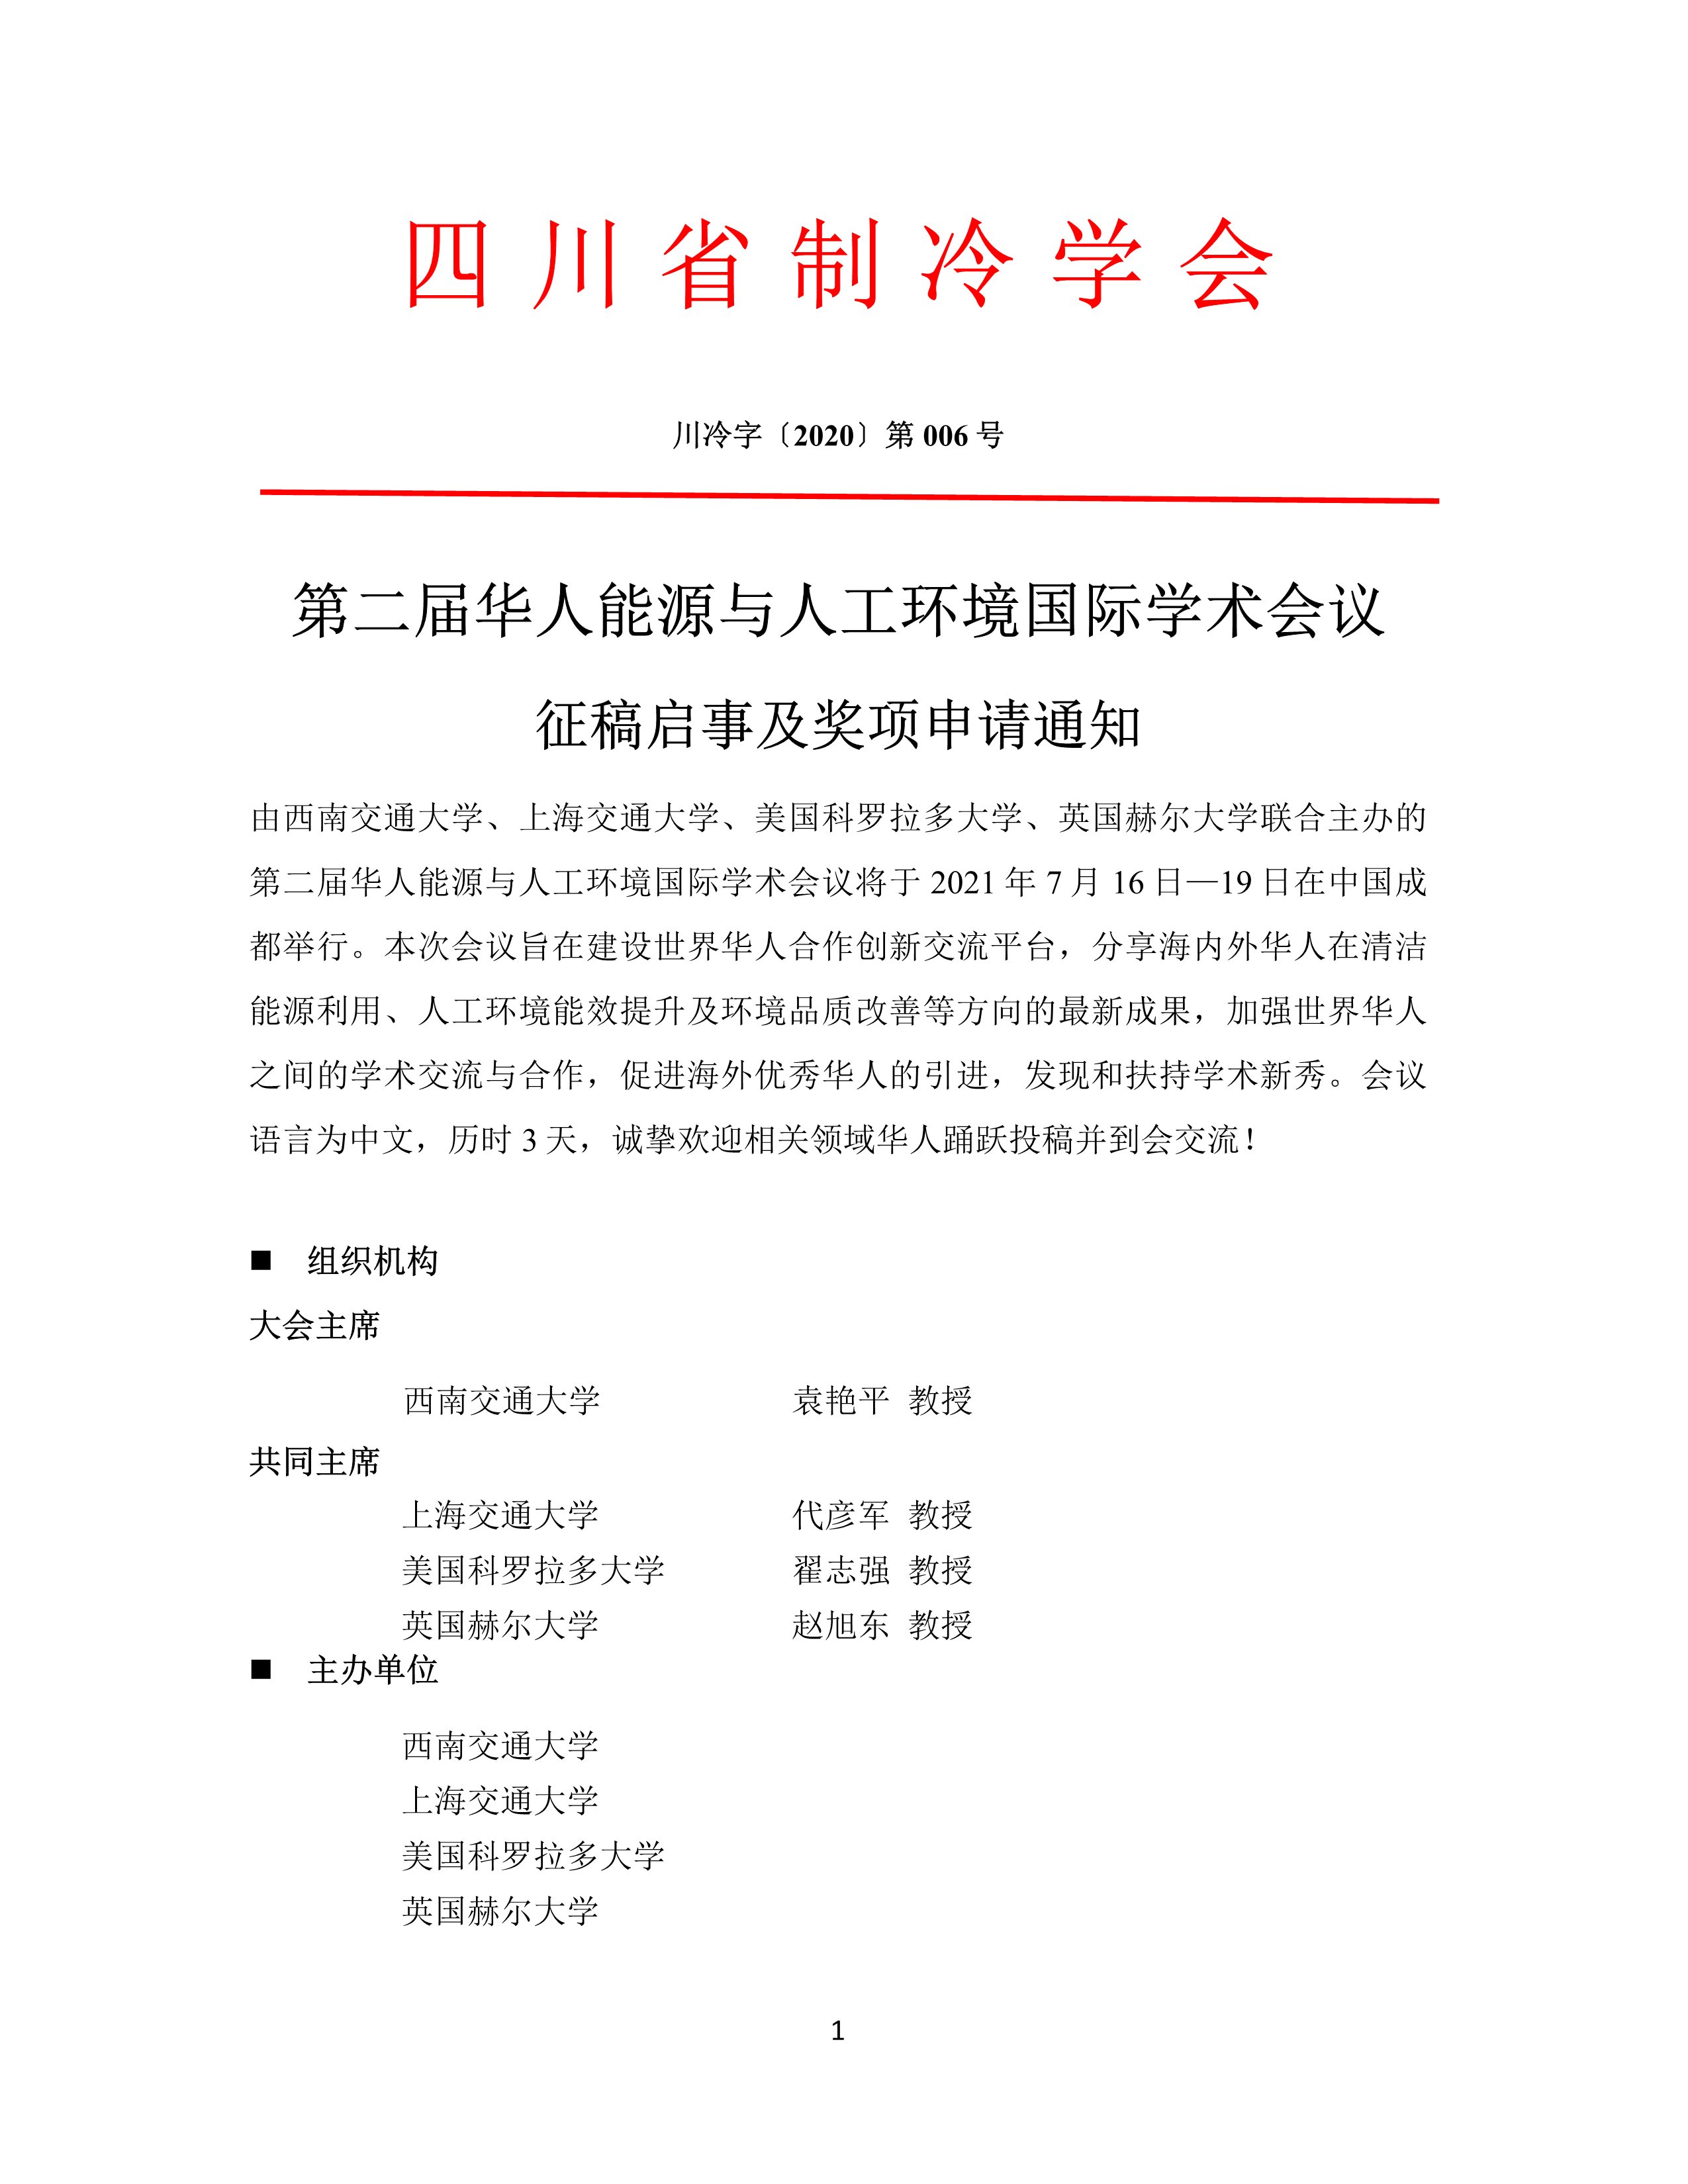 第二届华人能源与人工环境国际学术会议征稿启事及奖项申请通知(2)-1